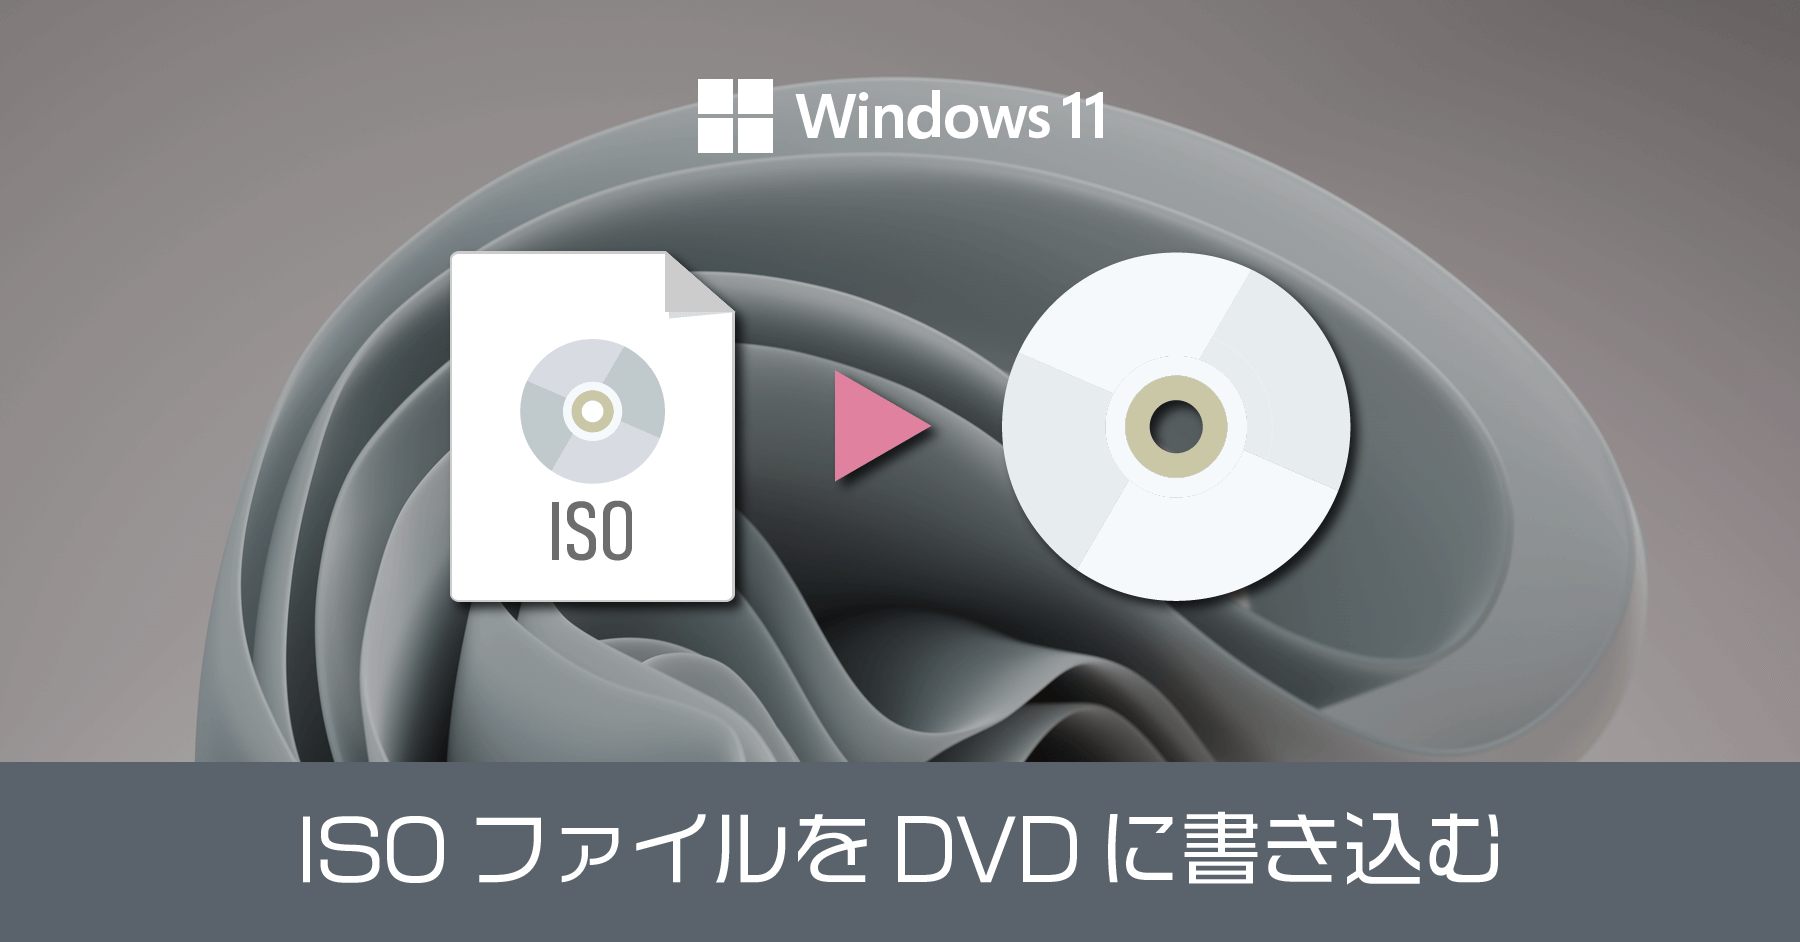 Windows 11 で ISO を DVD や CD に書き込む方法。標準機能が最もおすすめのアプリ